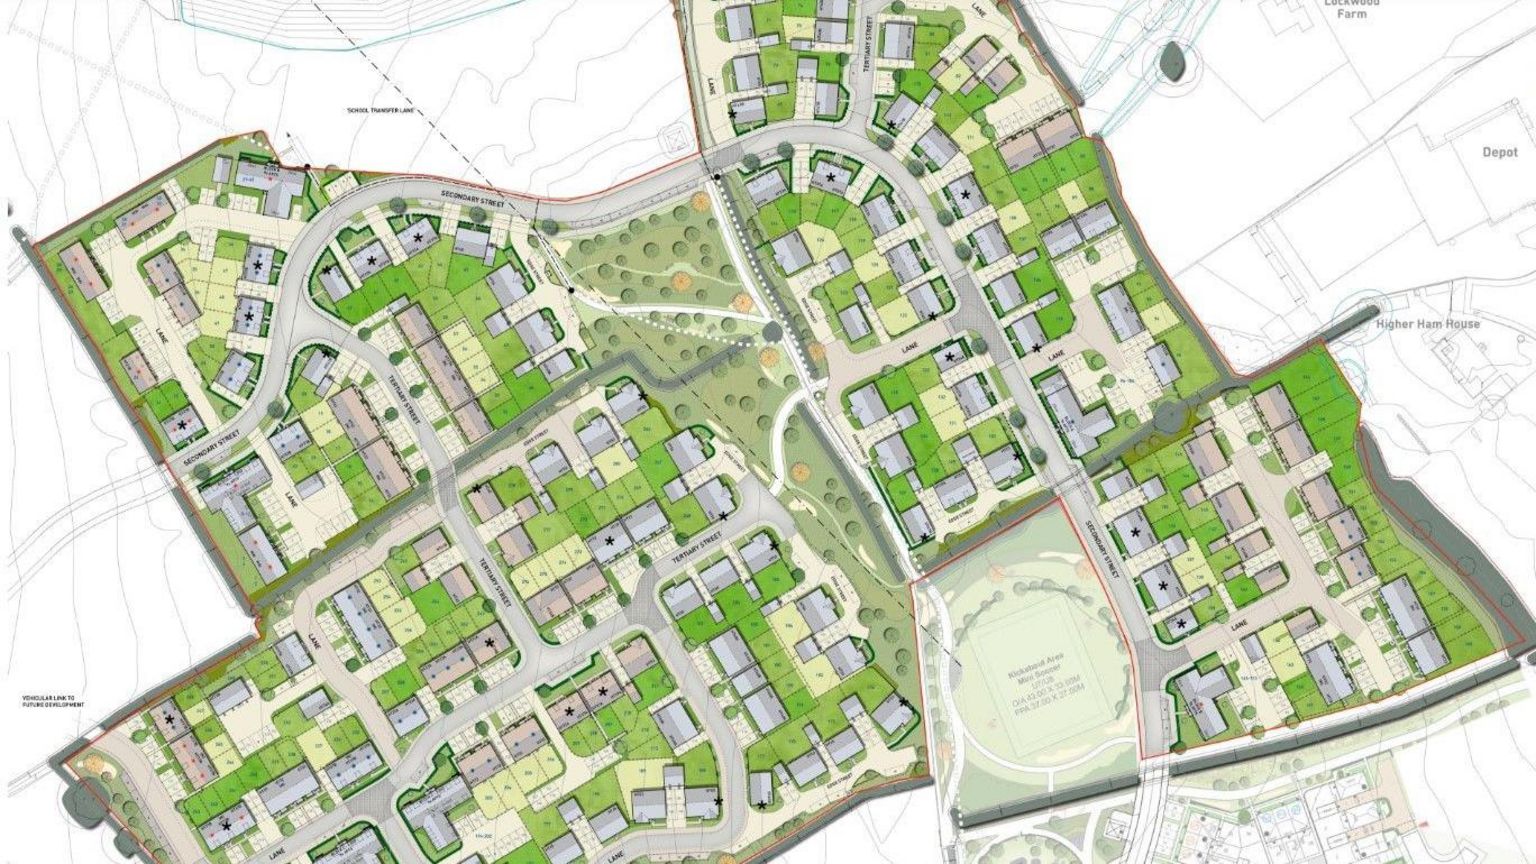 Plans for the Gillingham development